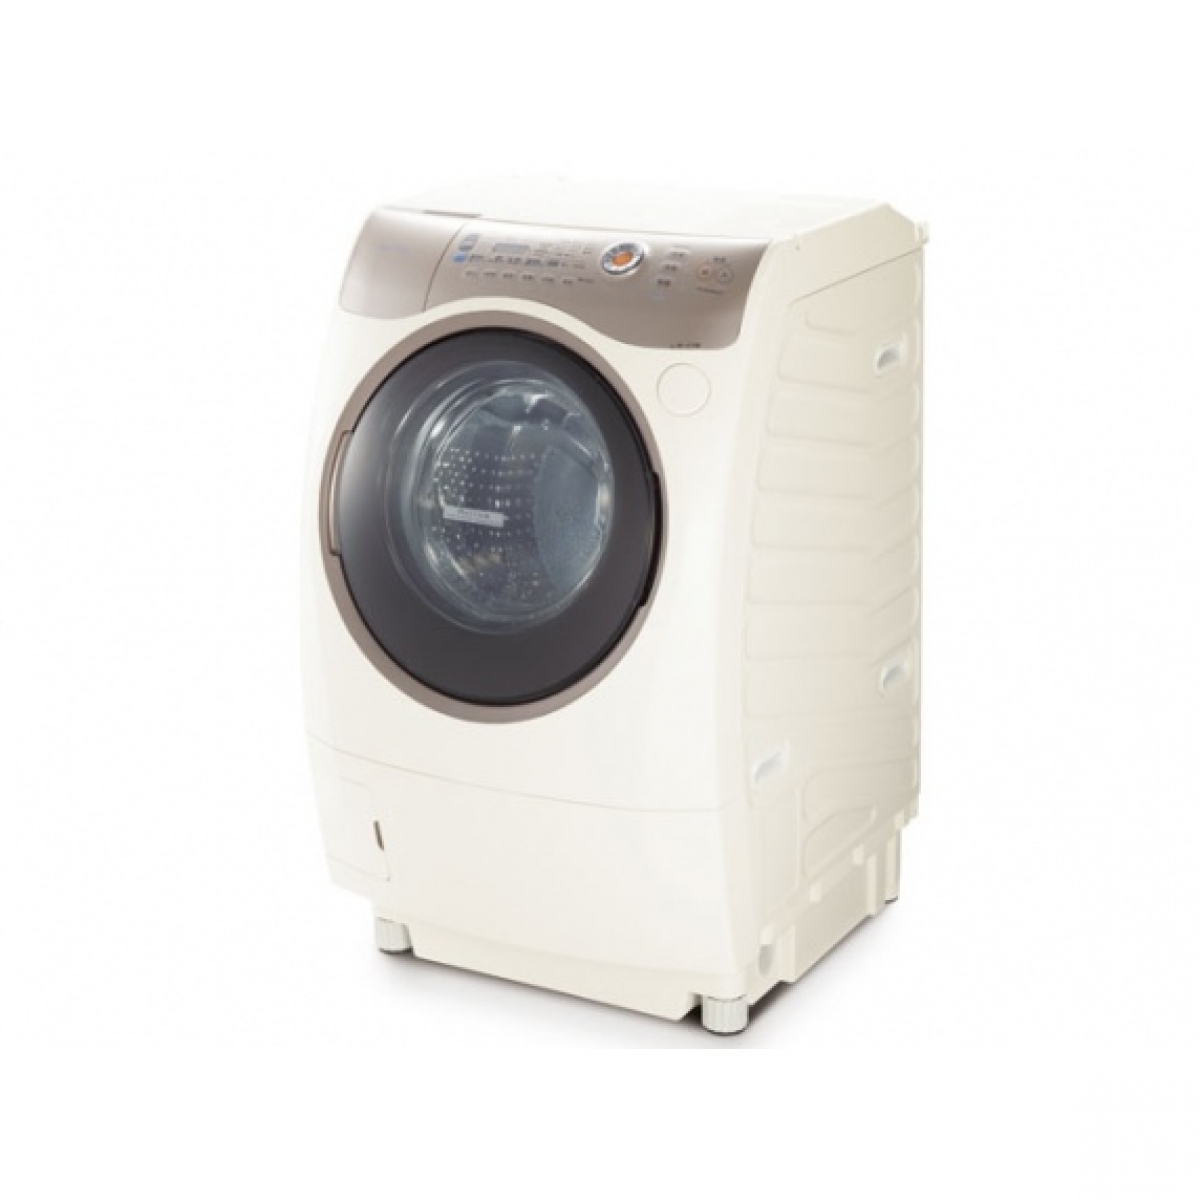 Máy giặt nội địa Nhật Bản Toshiba TW-Z8100 lồng nghiêng, động cơ Inverter dẫn động trực tiếp giặt 9kg, sấy Block 6kg